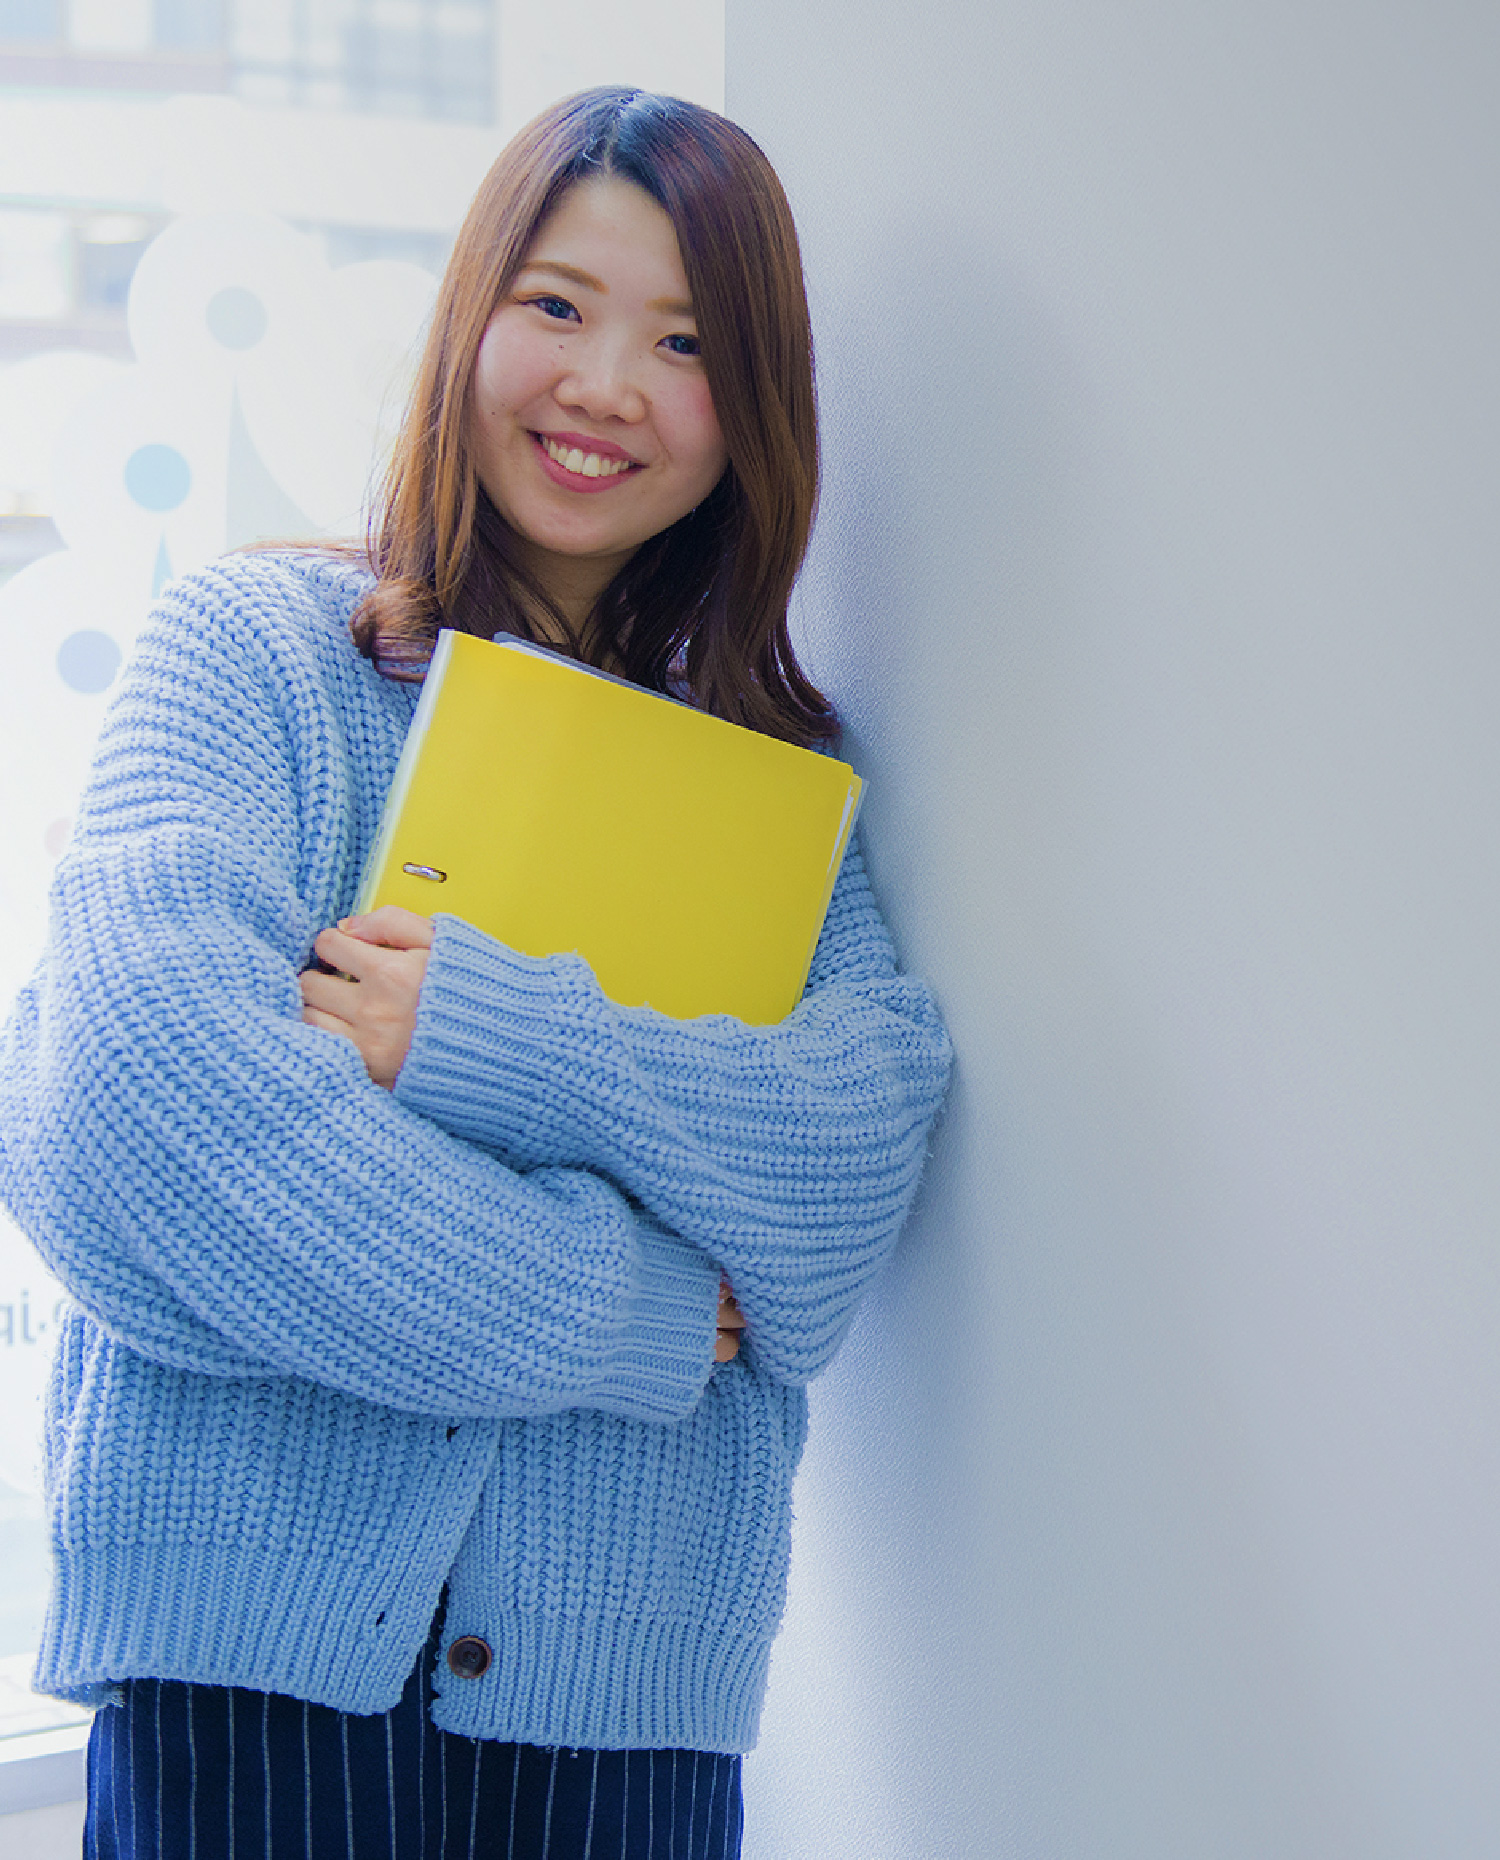 女性が黄色のノートを持って笑っている写真